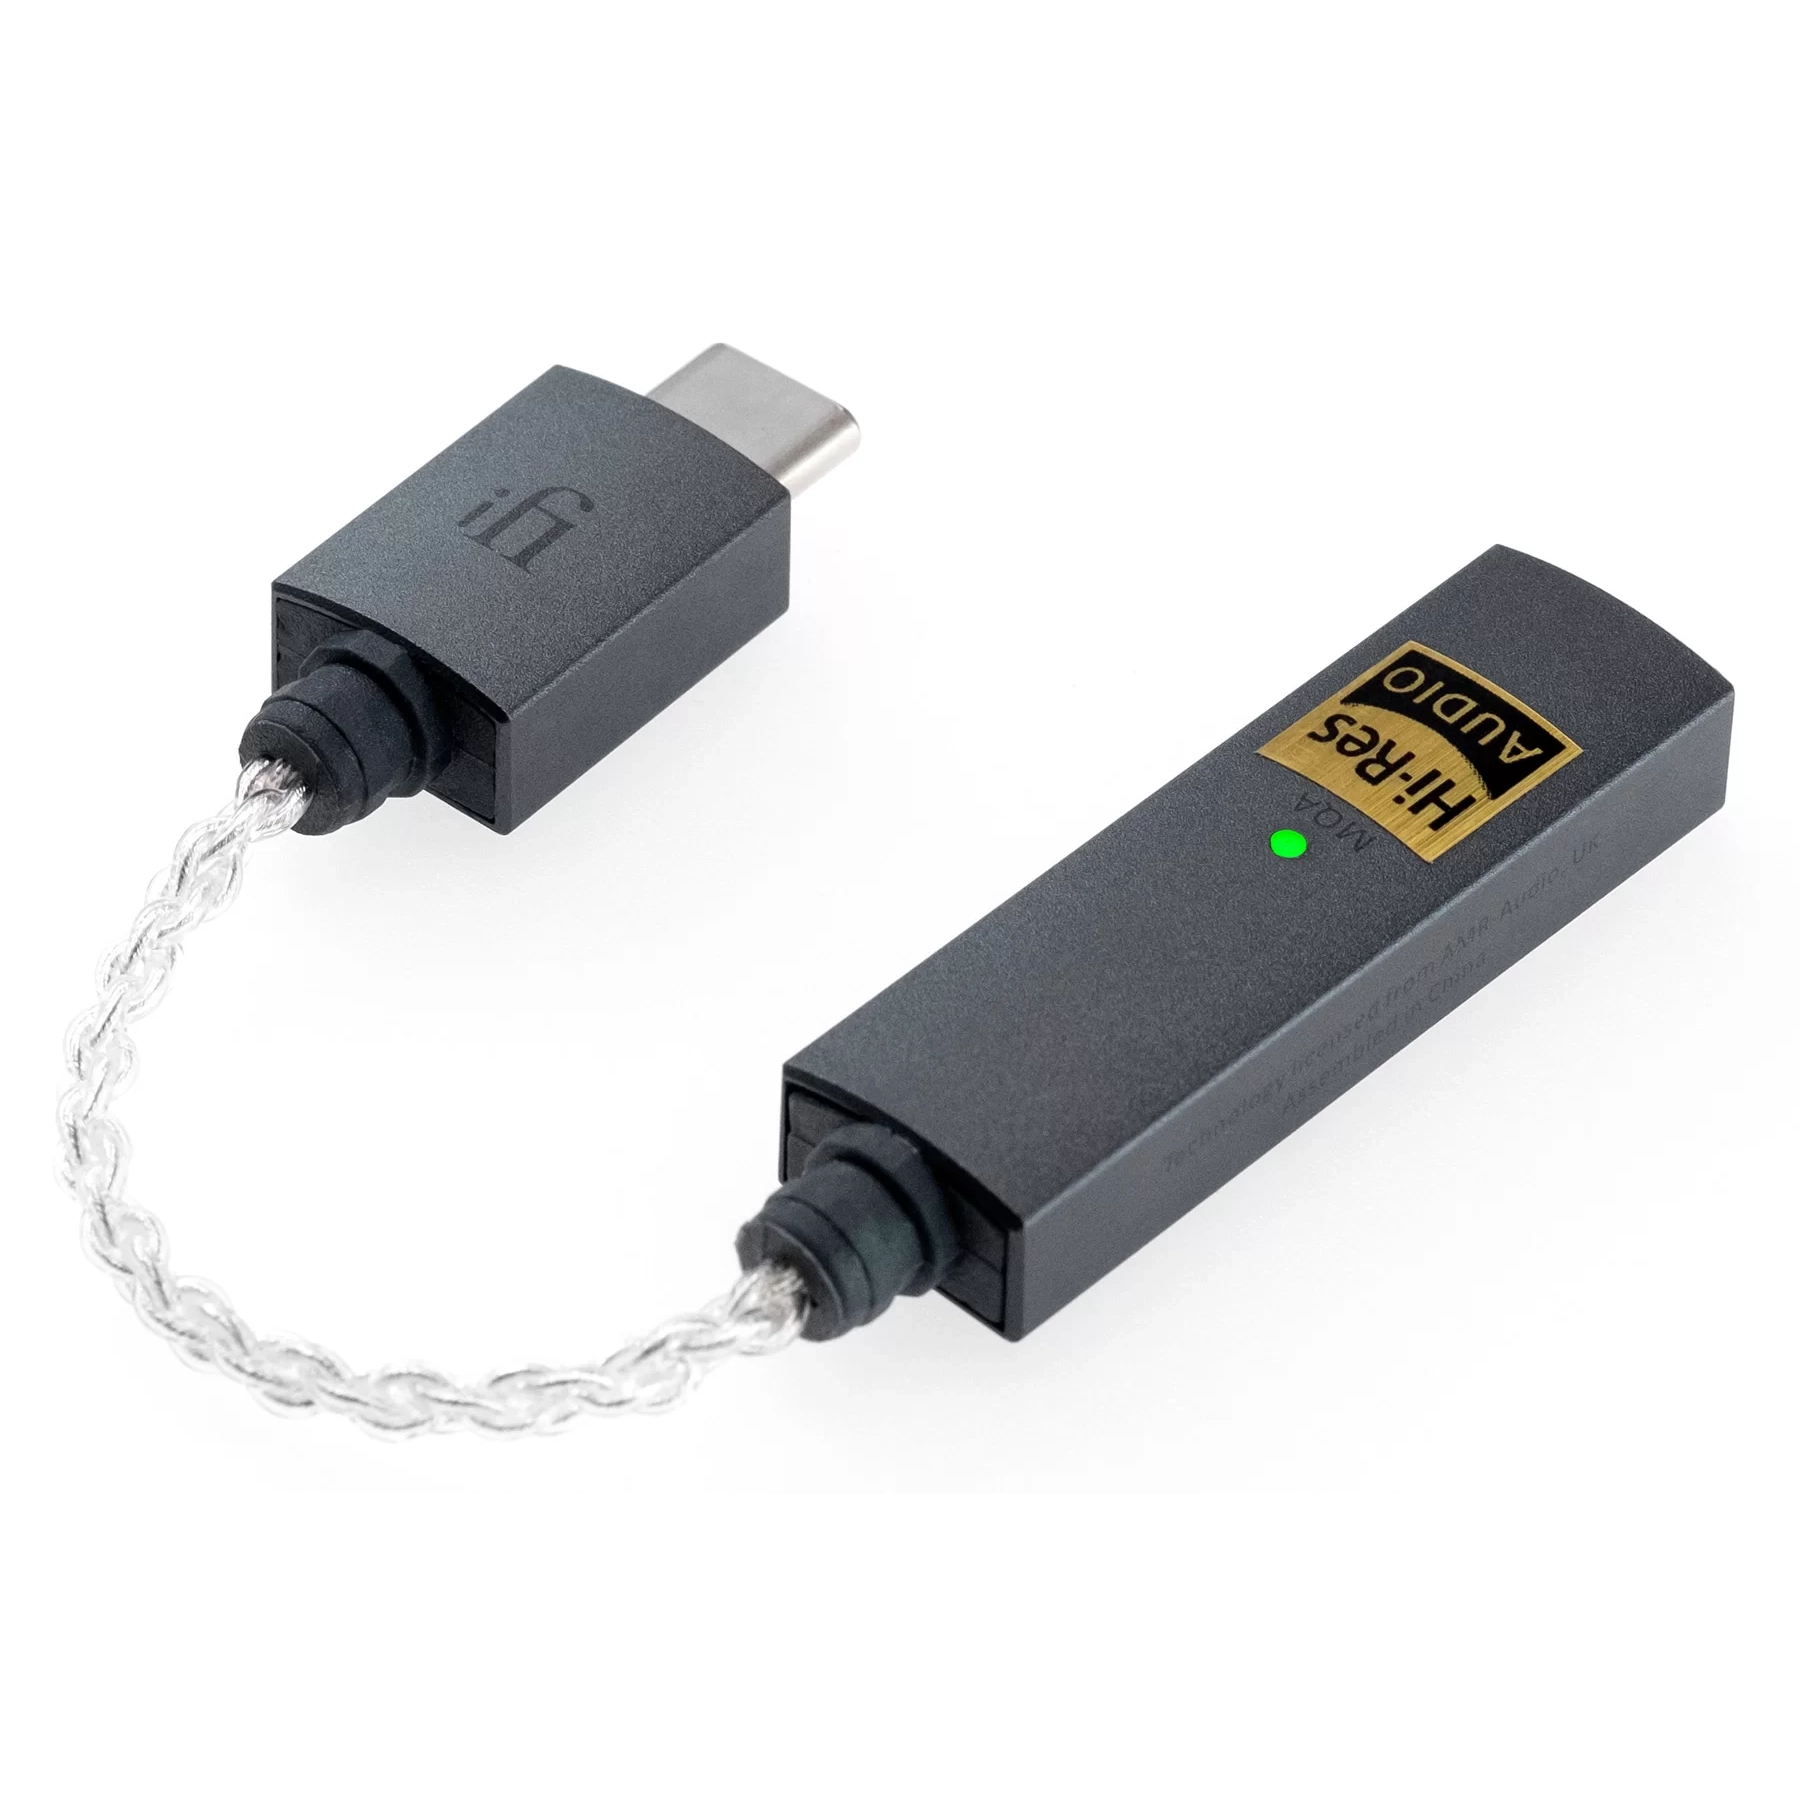 iFi GO link USB-C connector